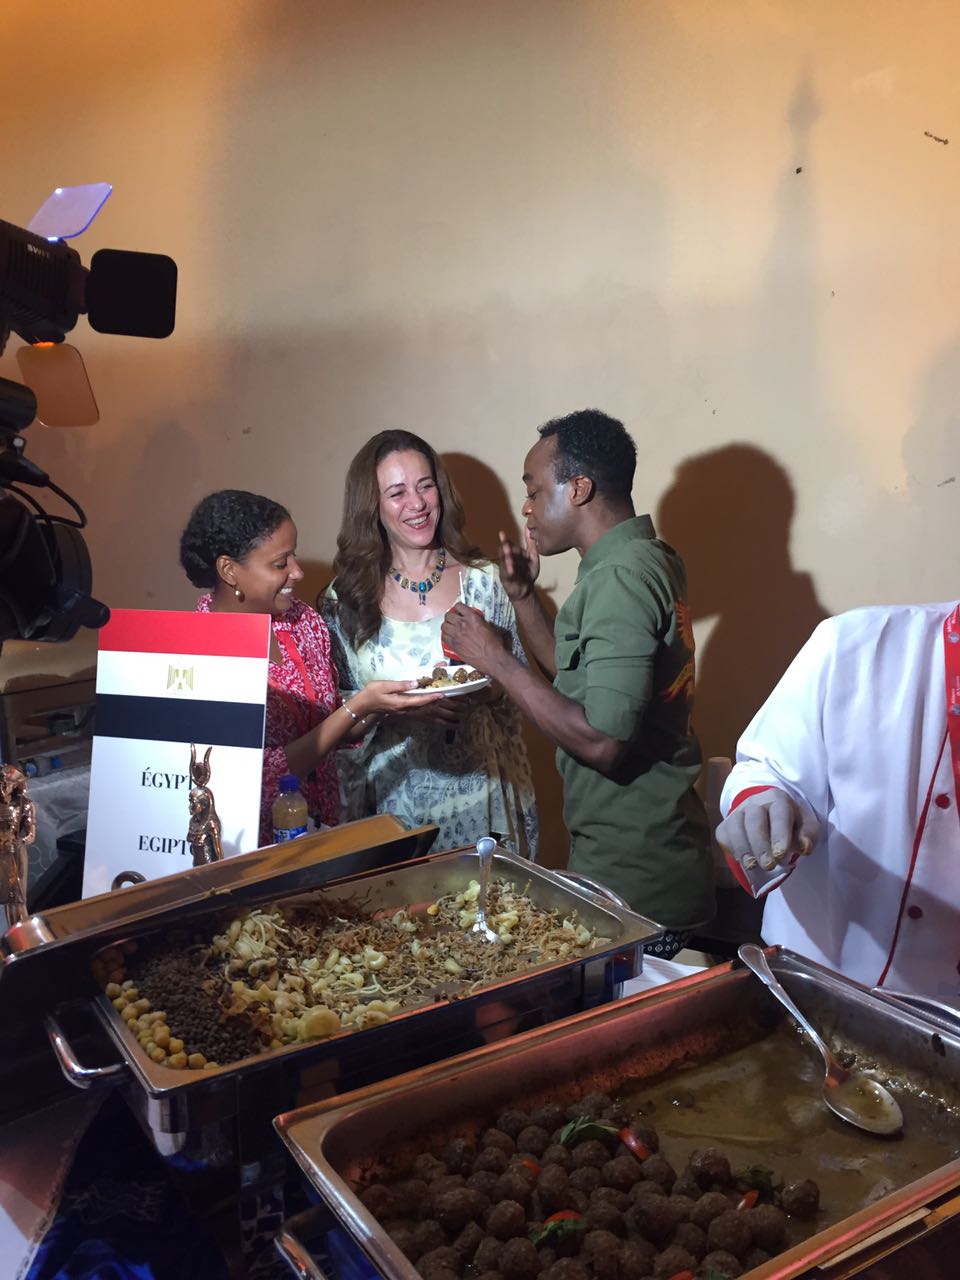 السفارة المصرية فى أنجولا تشارك فى اليوم العالمى للفرانكوفونية بتقديم مأكولات مصرية 